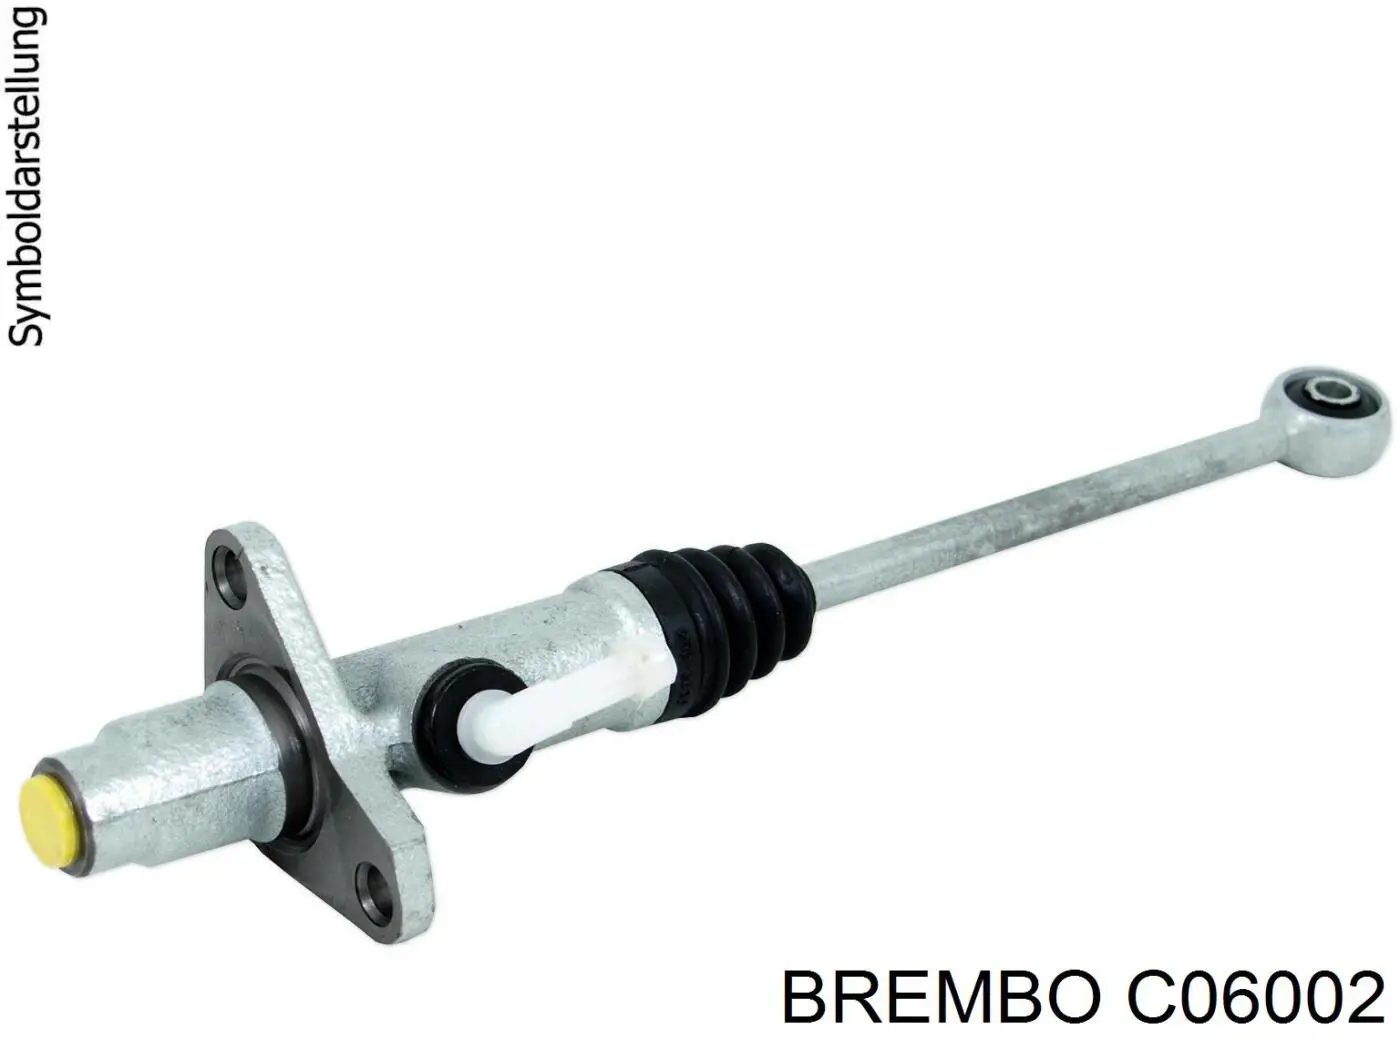 C06002 Brembo cilindro maestro de embrague